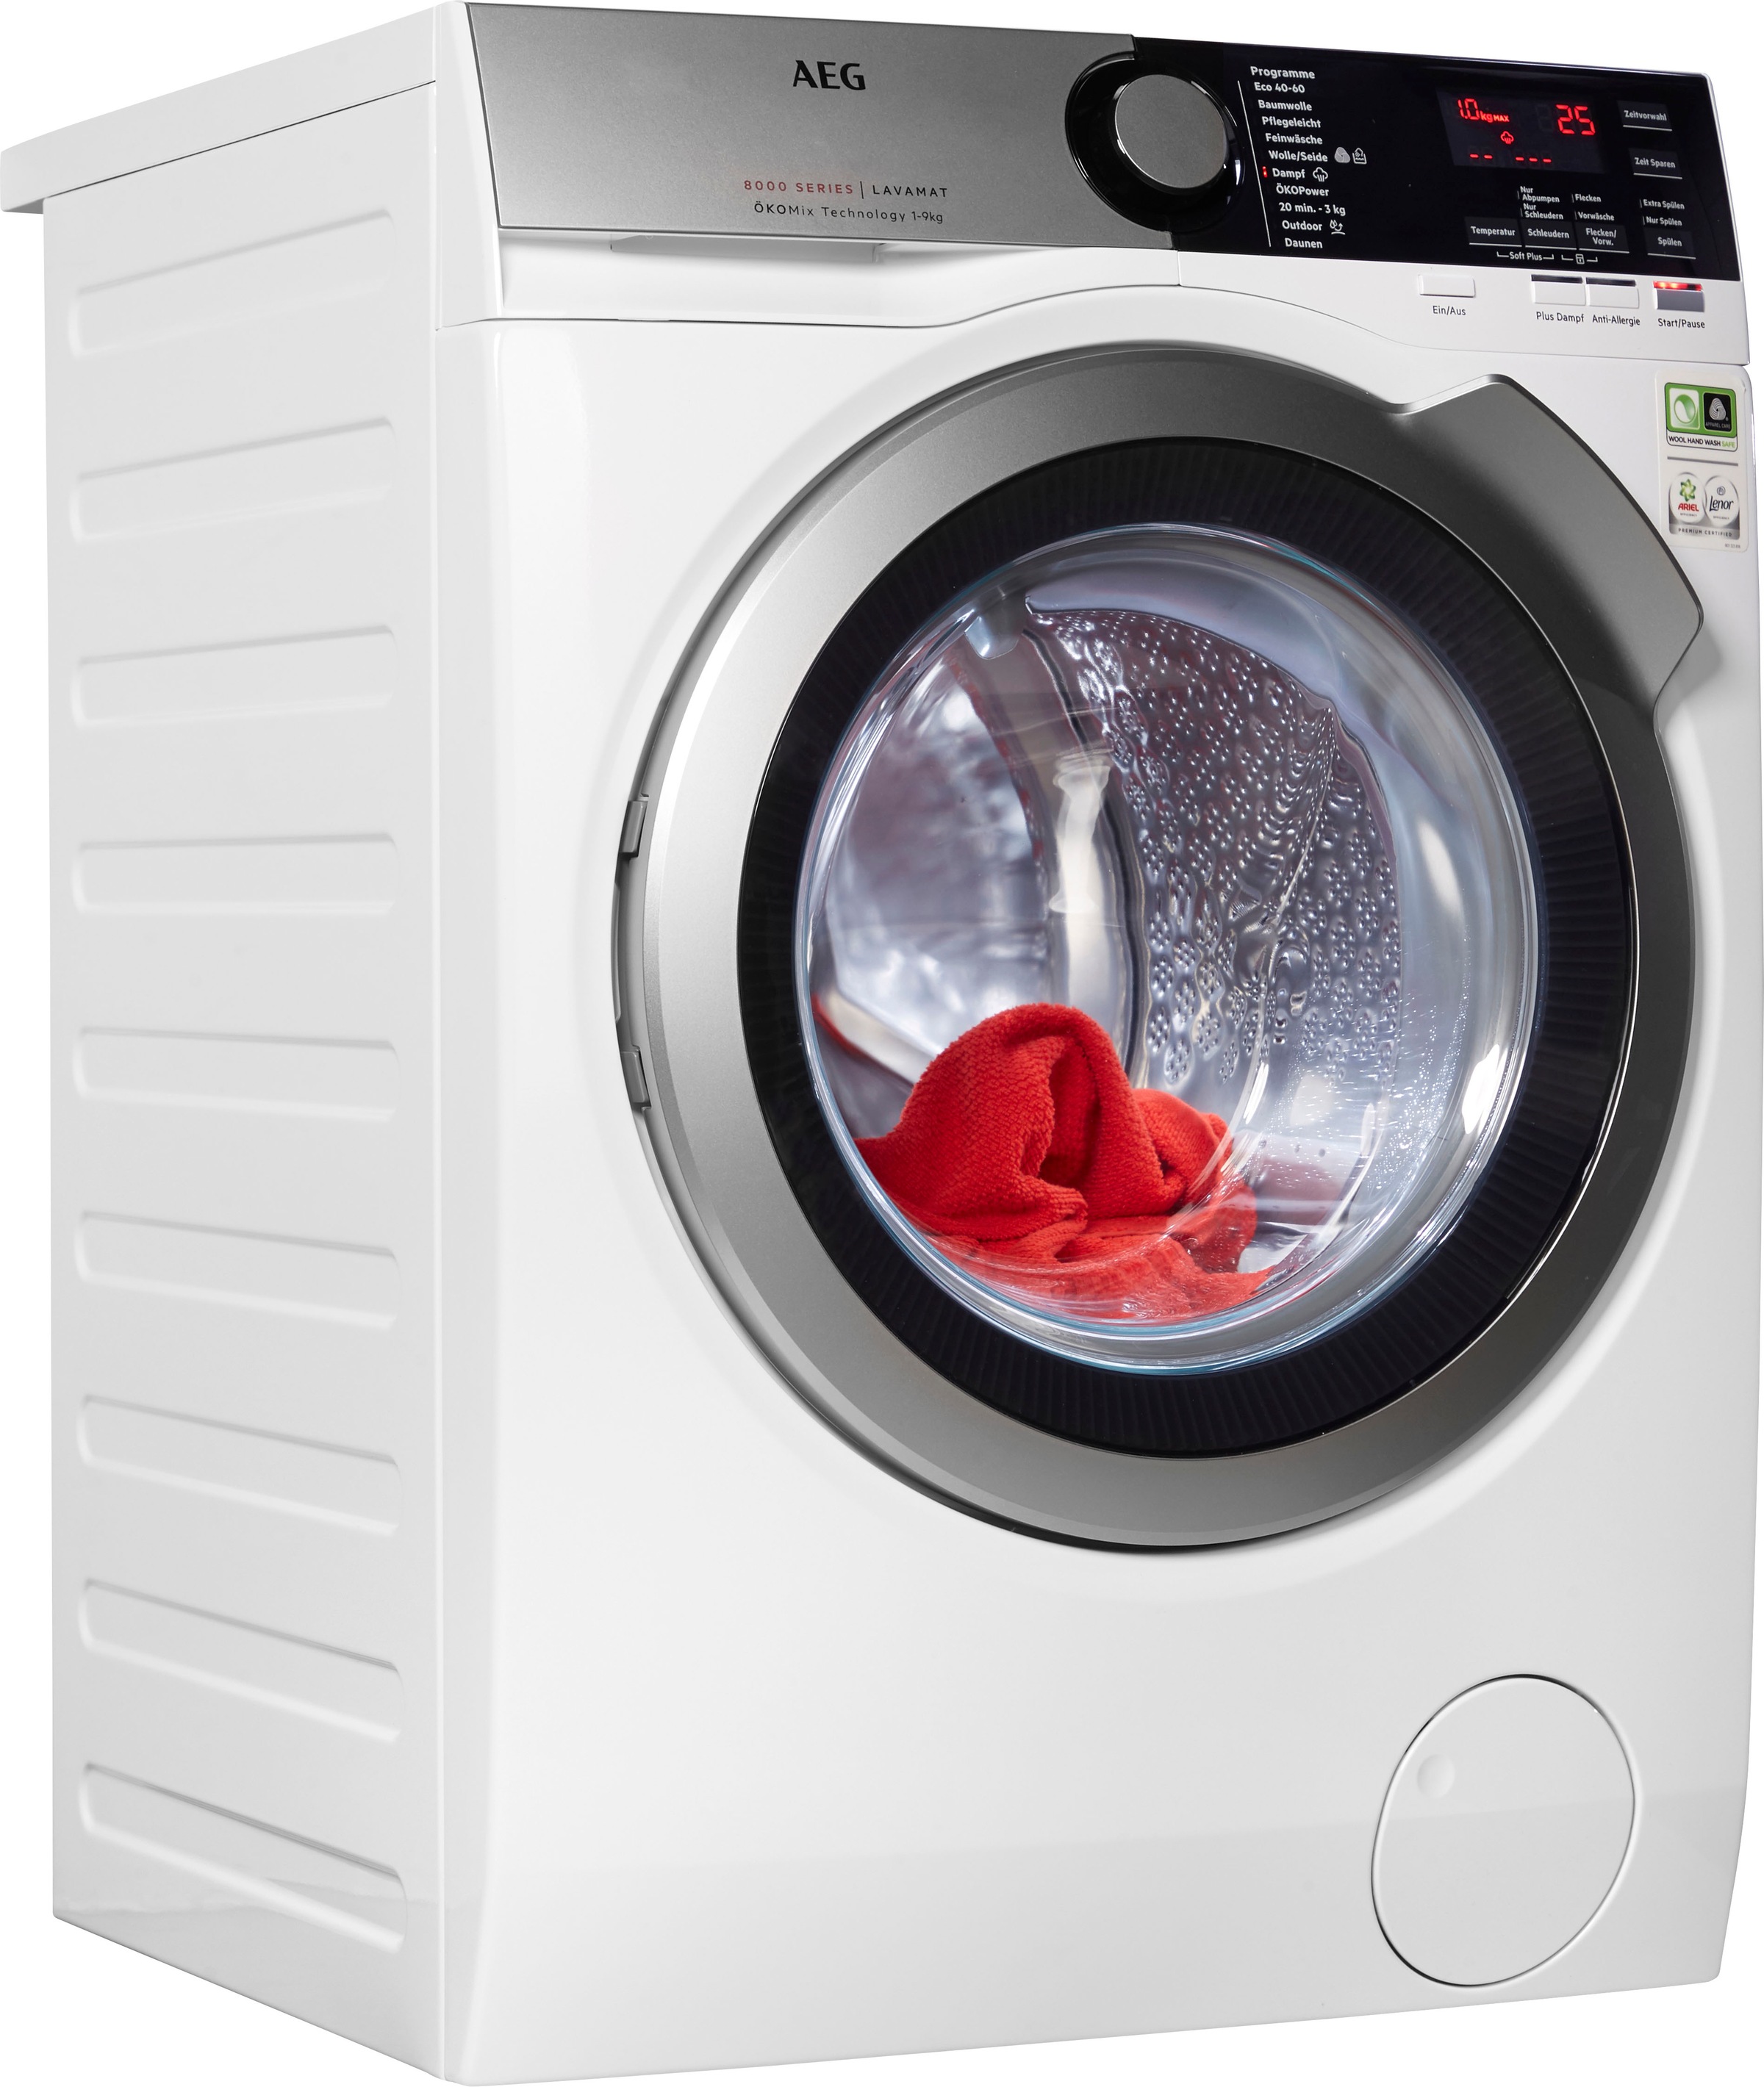 Waschmaschine, U/min kg, mit Jahren 3 9 1400 XXL L8FEF76490, AEG Garantie